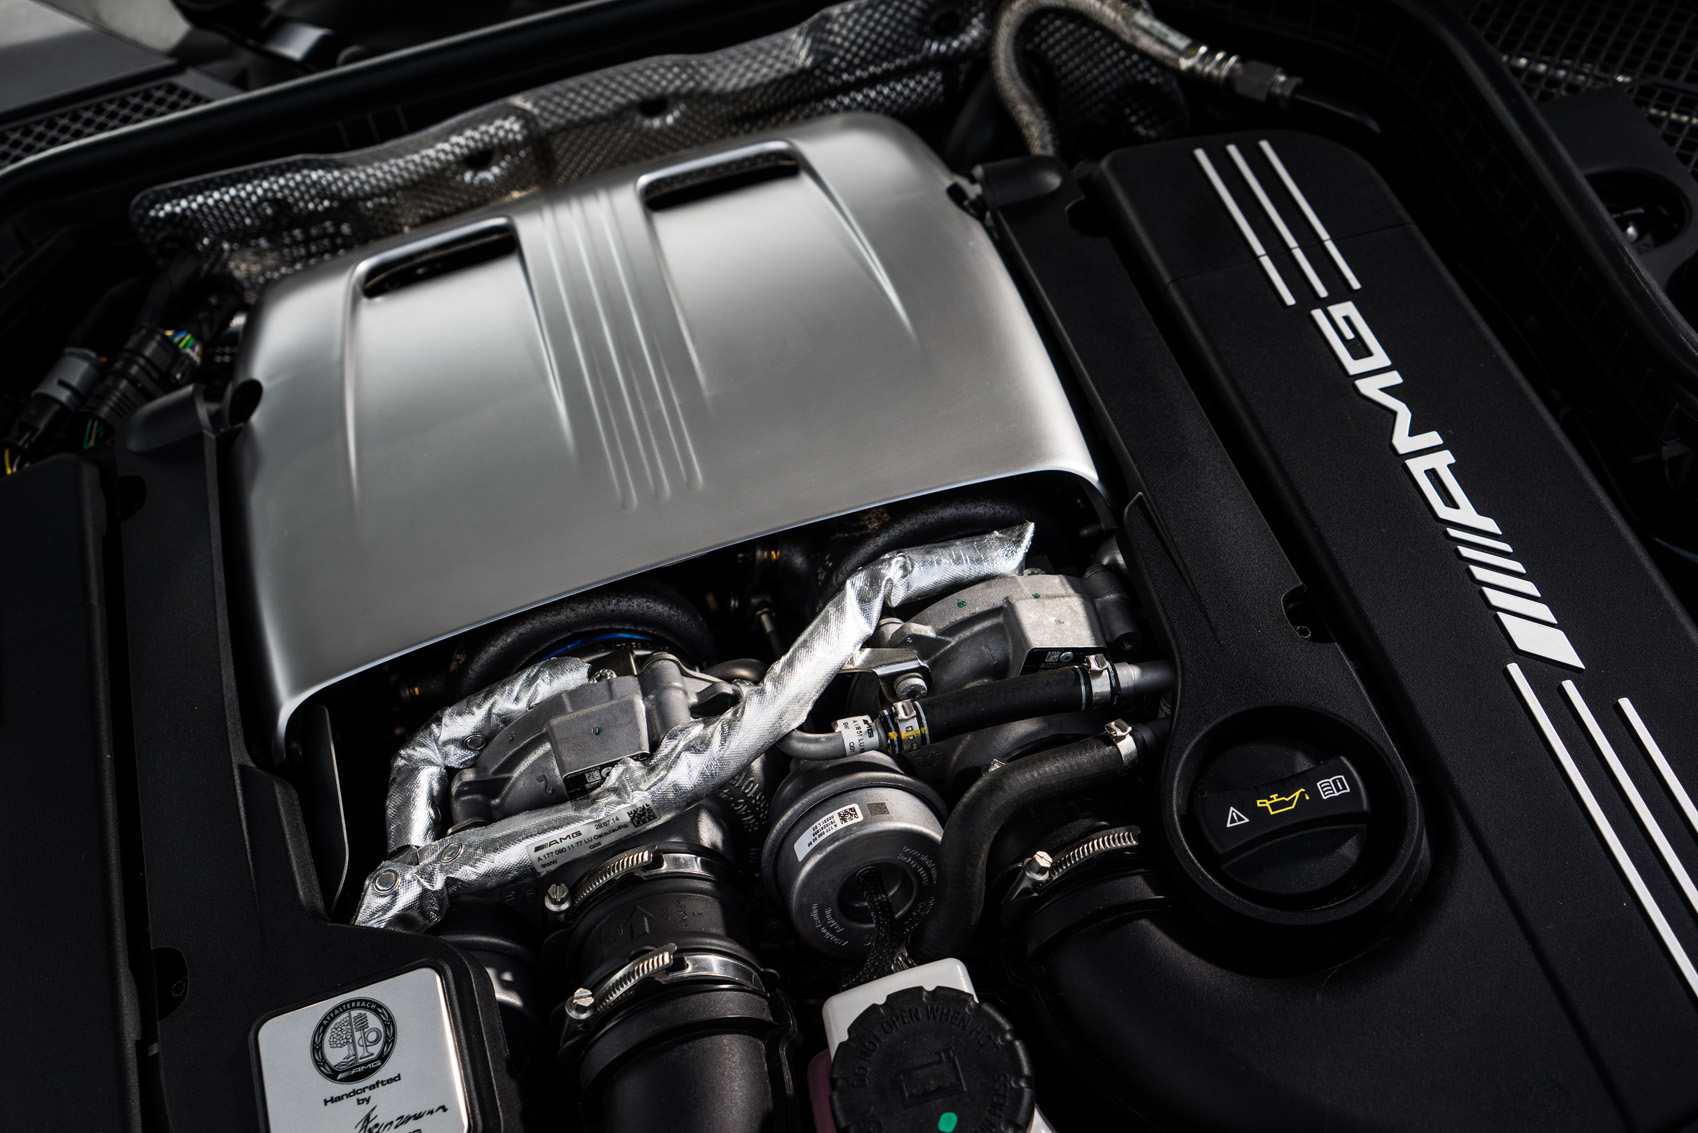 4.7-litre V8 Mercedes-AMG C 63 petrol engine